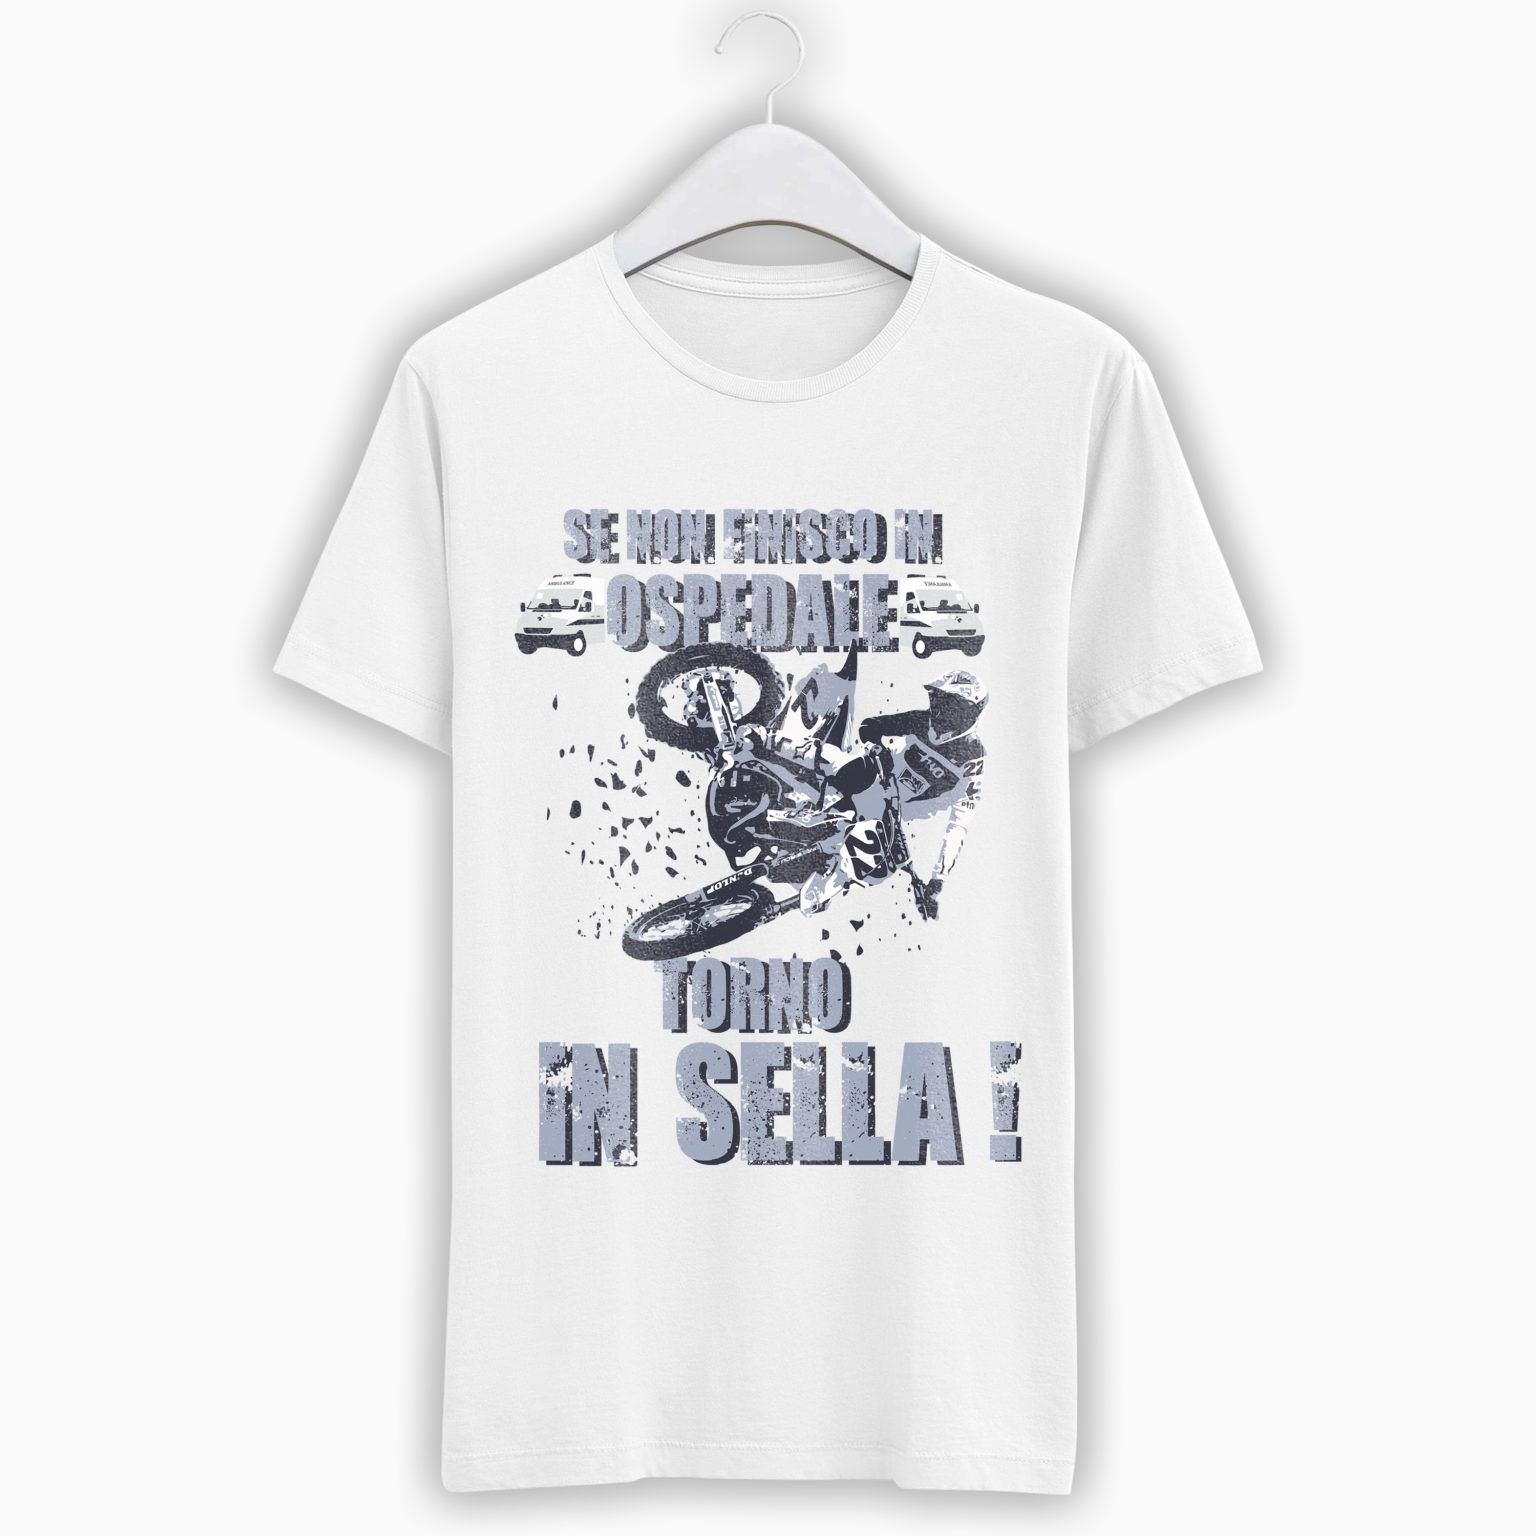 T-Shirt Uomo Motocross – Se non finisco in ospedale torno in sella